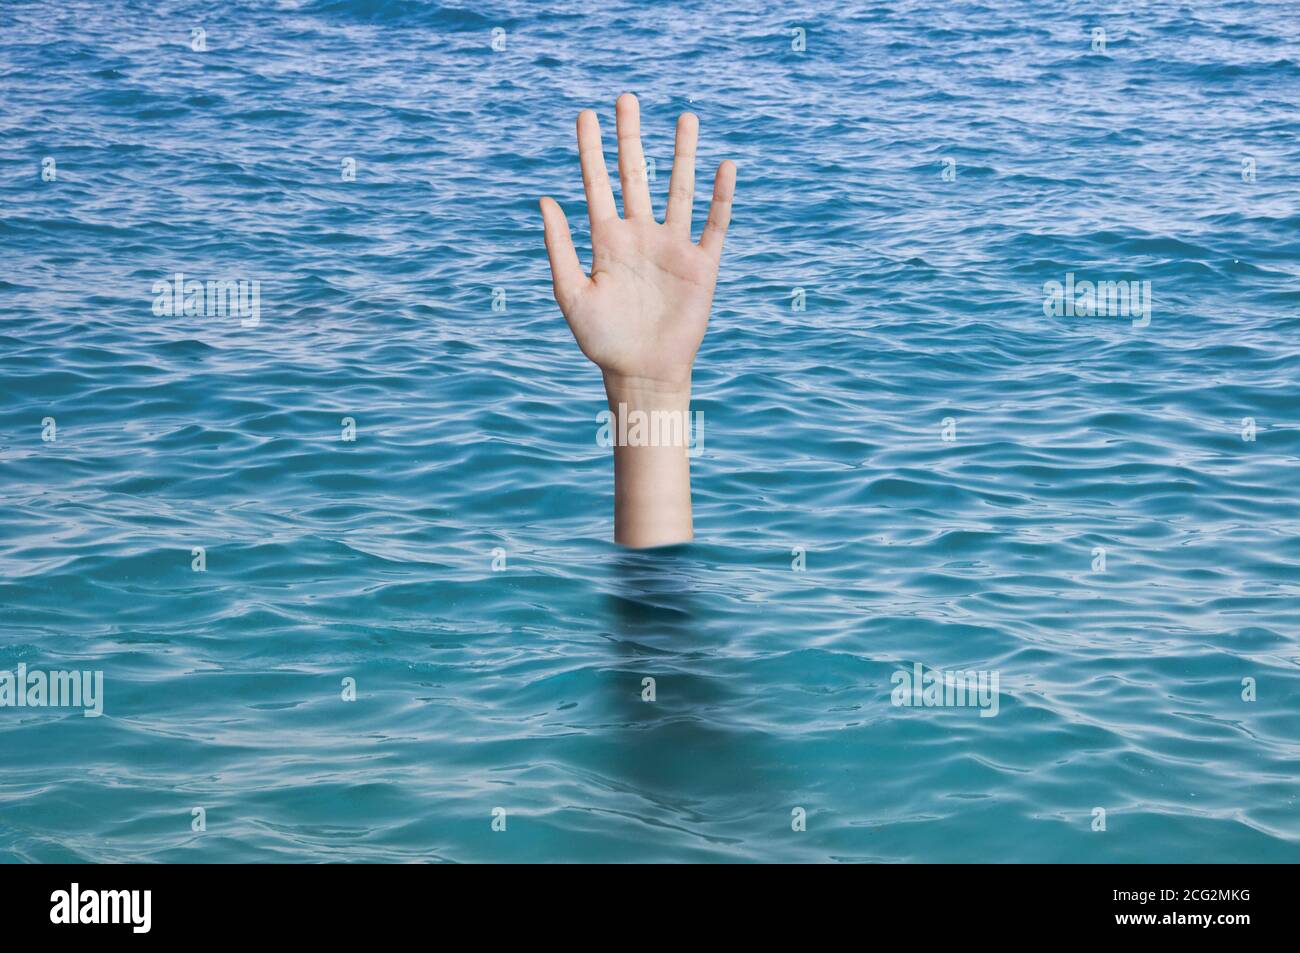 Sinkende Hand im Wasser des Ozeans, die Hilfe braucht. Ertrinkende Person Notfall, Ausfall und Hilfe Konzept Stockfoto